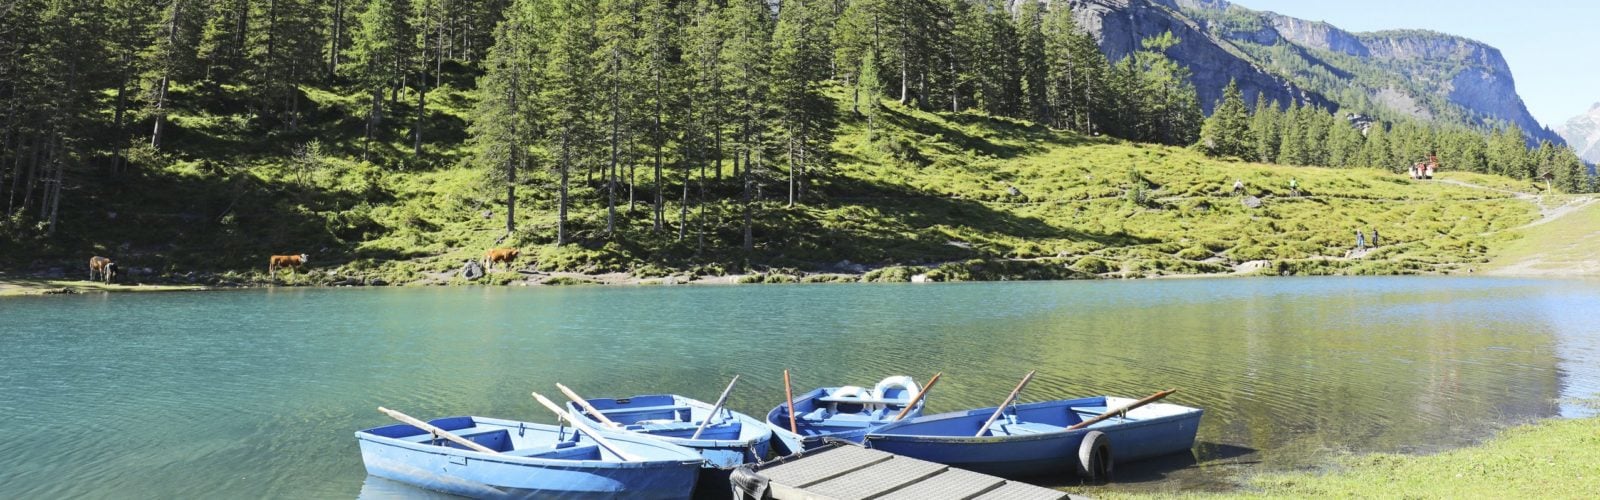 oeschinensee-lake-switzerland-boats